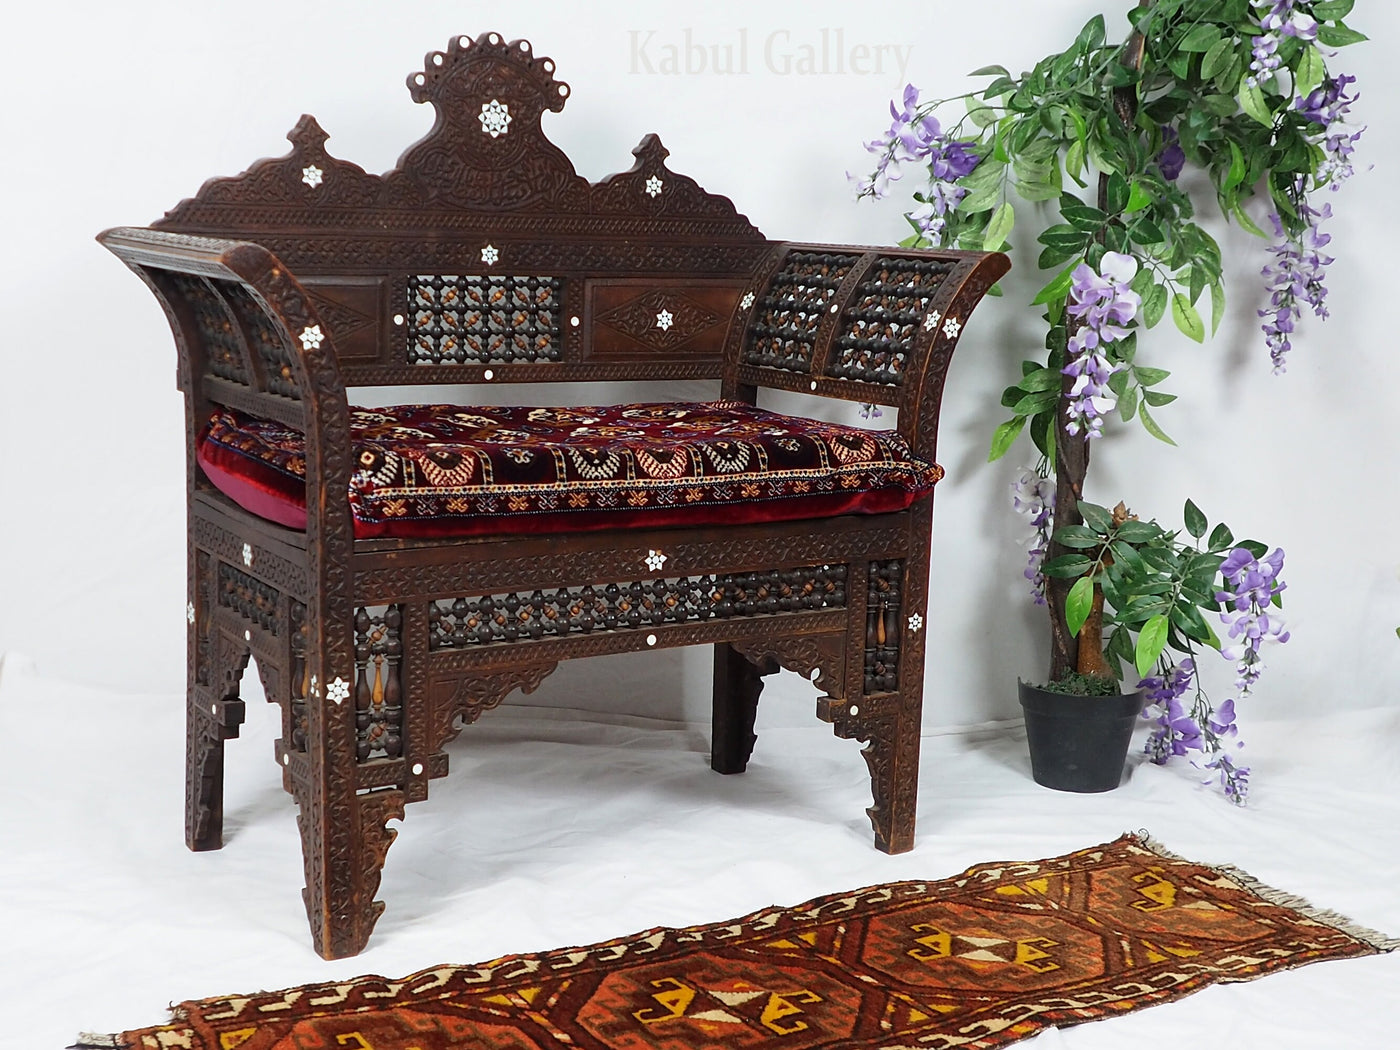 Antik orient islamische Stuhl  Bank Hocker aus Walnussholz und samtweichen Teppich  Damaskus Syrien maurische Kunst mit  Arabische Schrift  Orientsbazar   